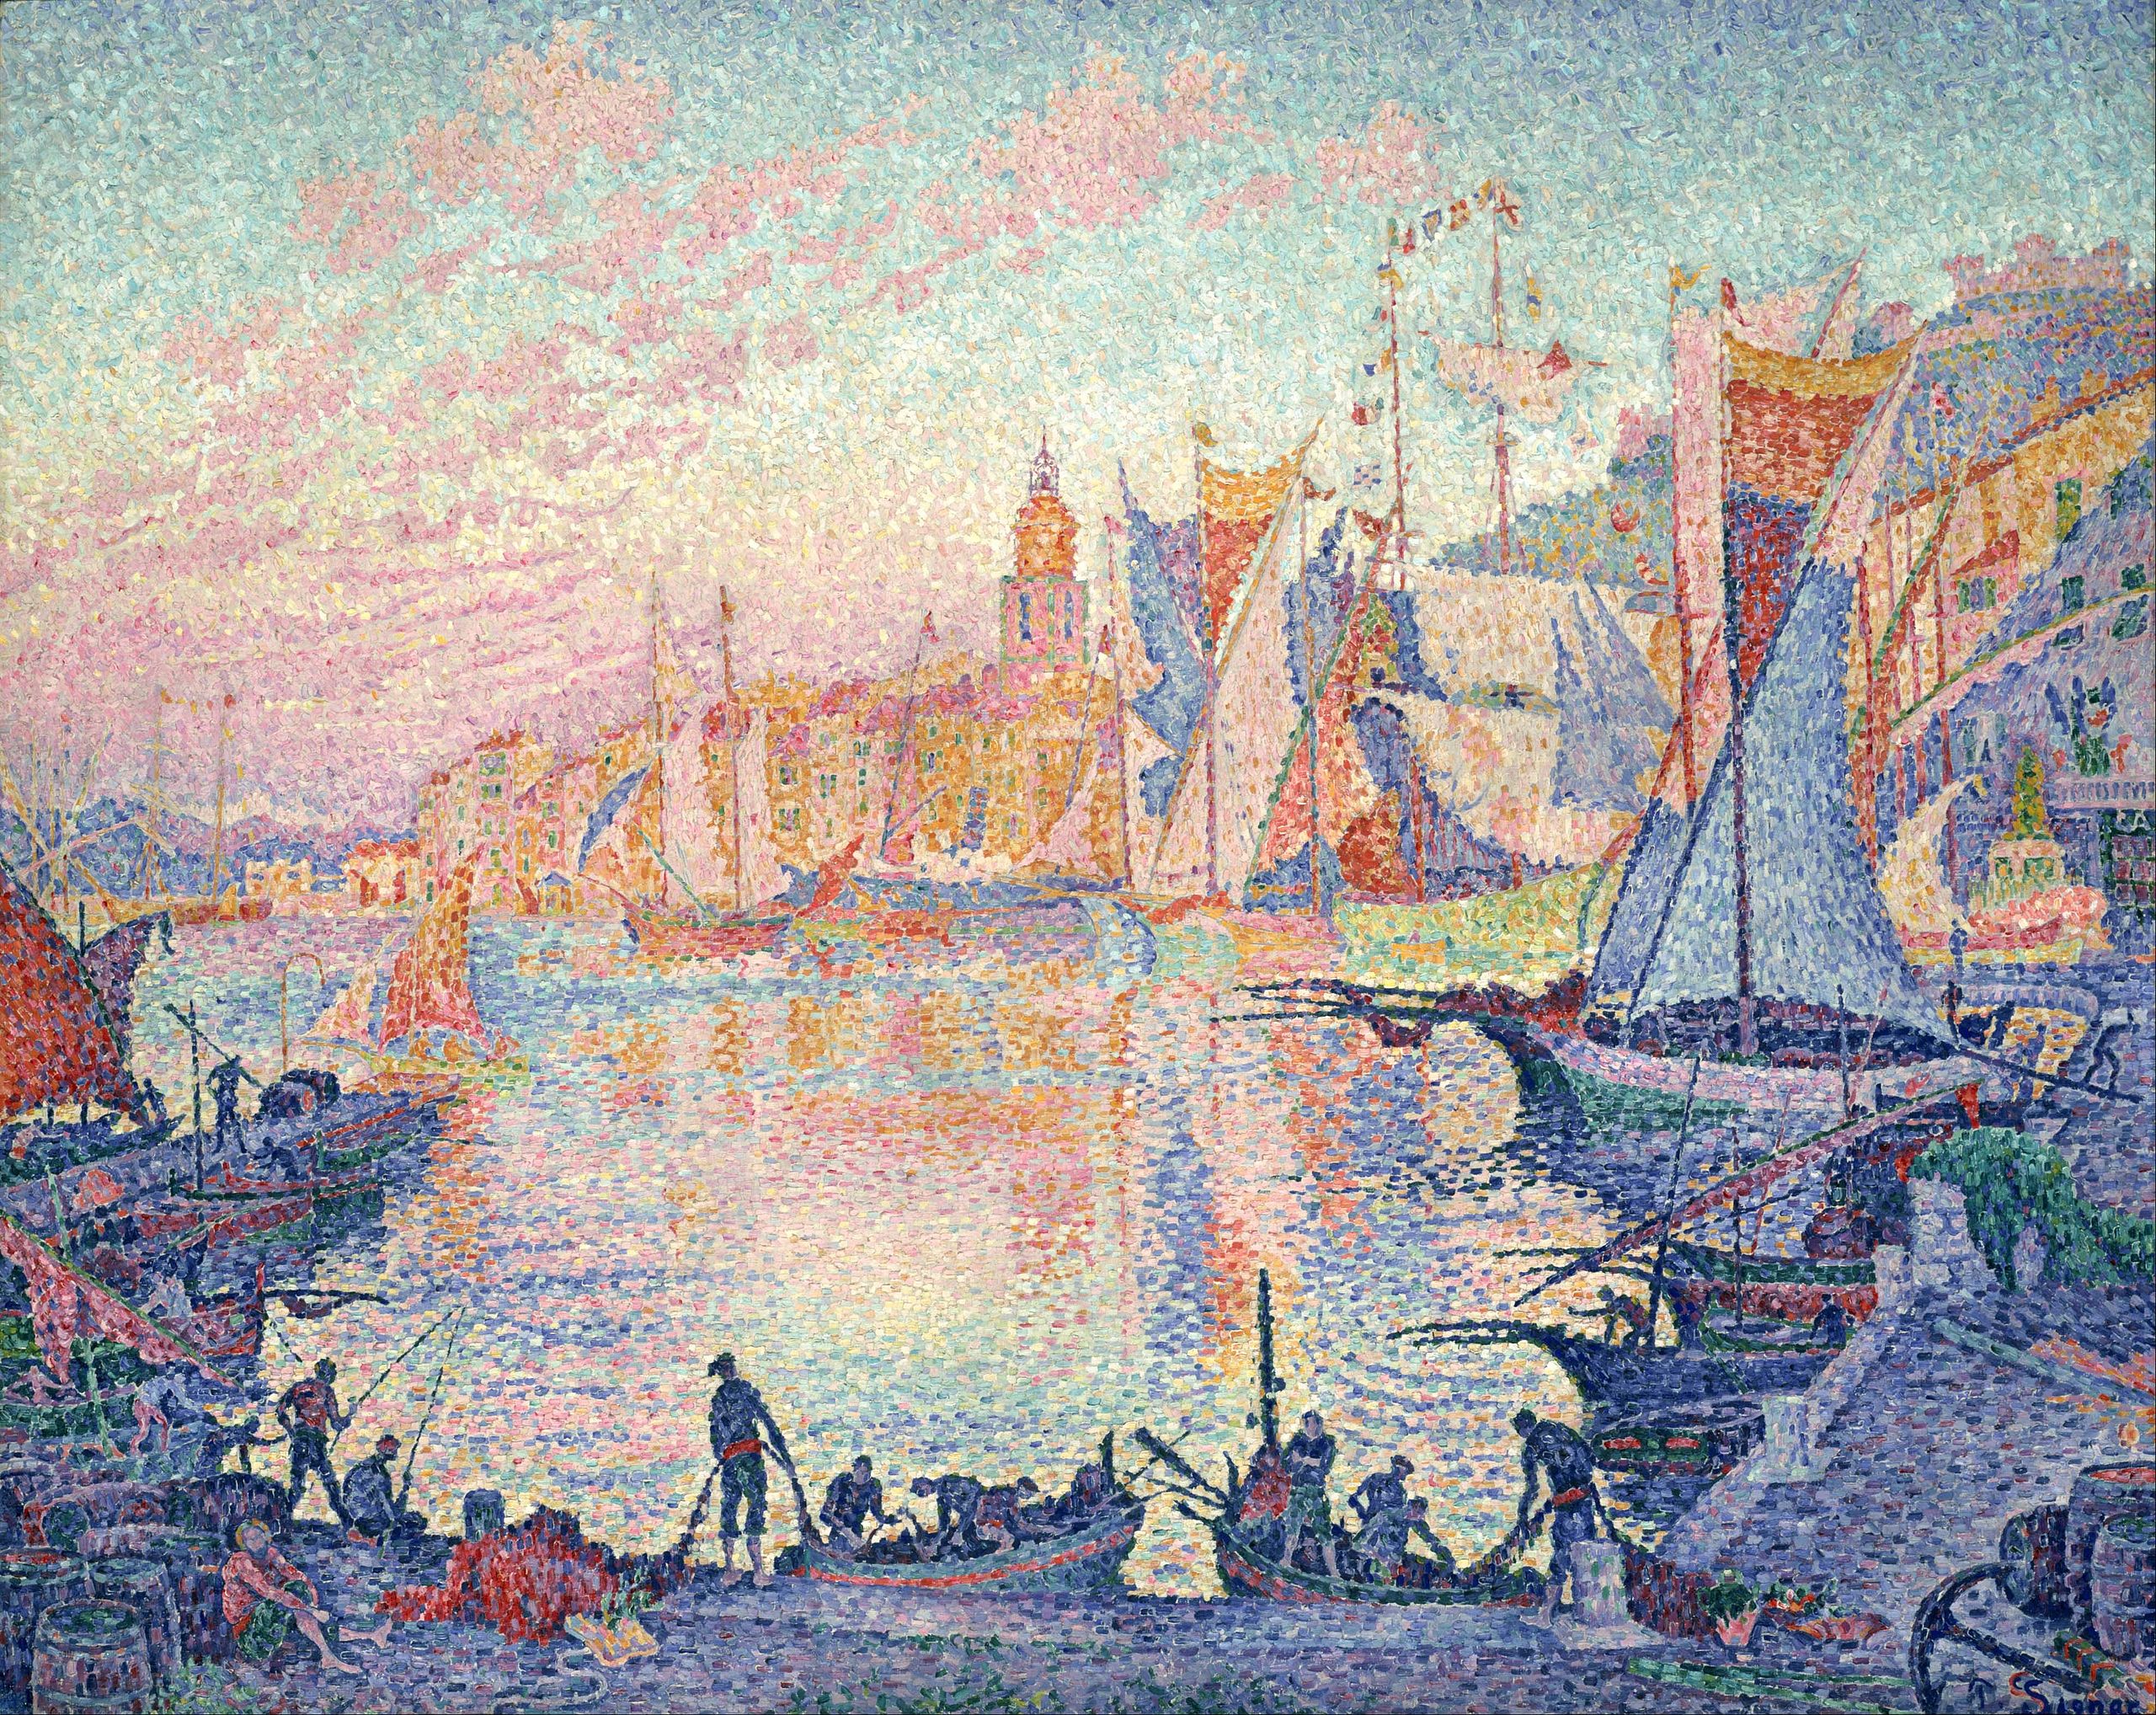 Порт Сен-Тропе by Paul Signac - 1901-1902 - 131 x 161.5 см 